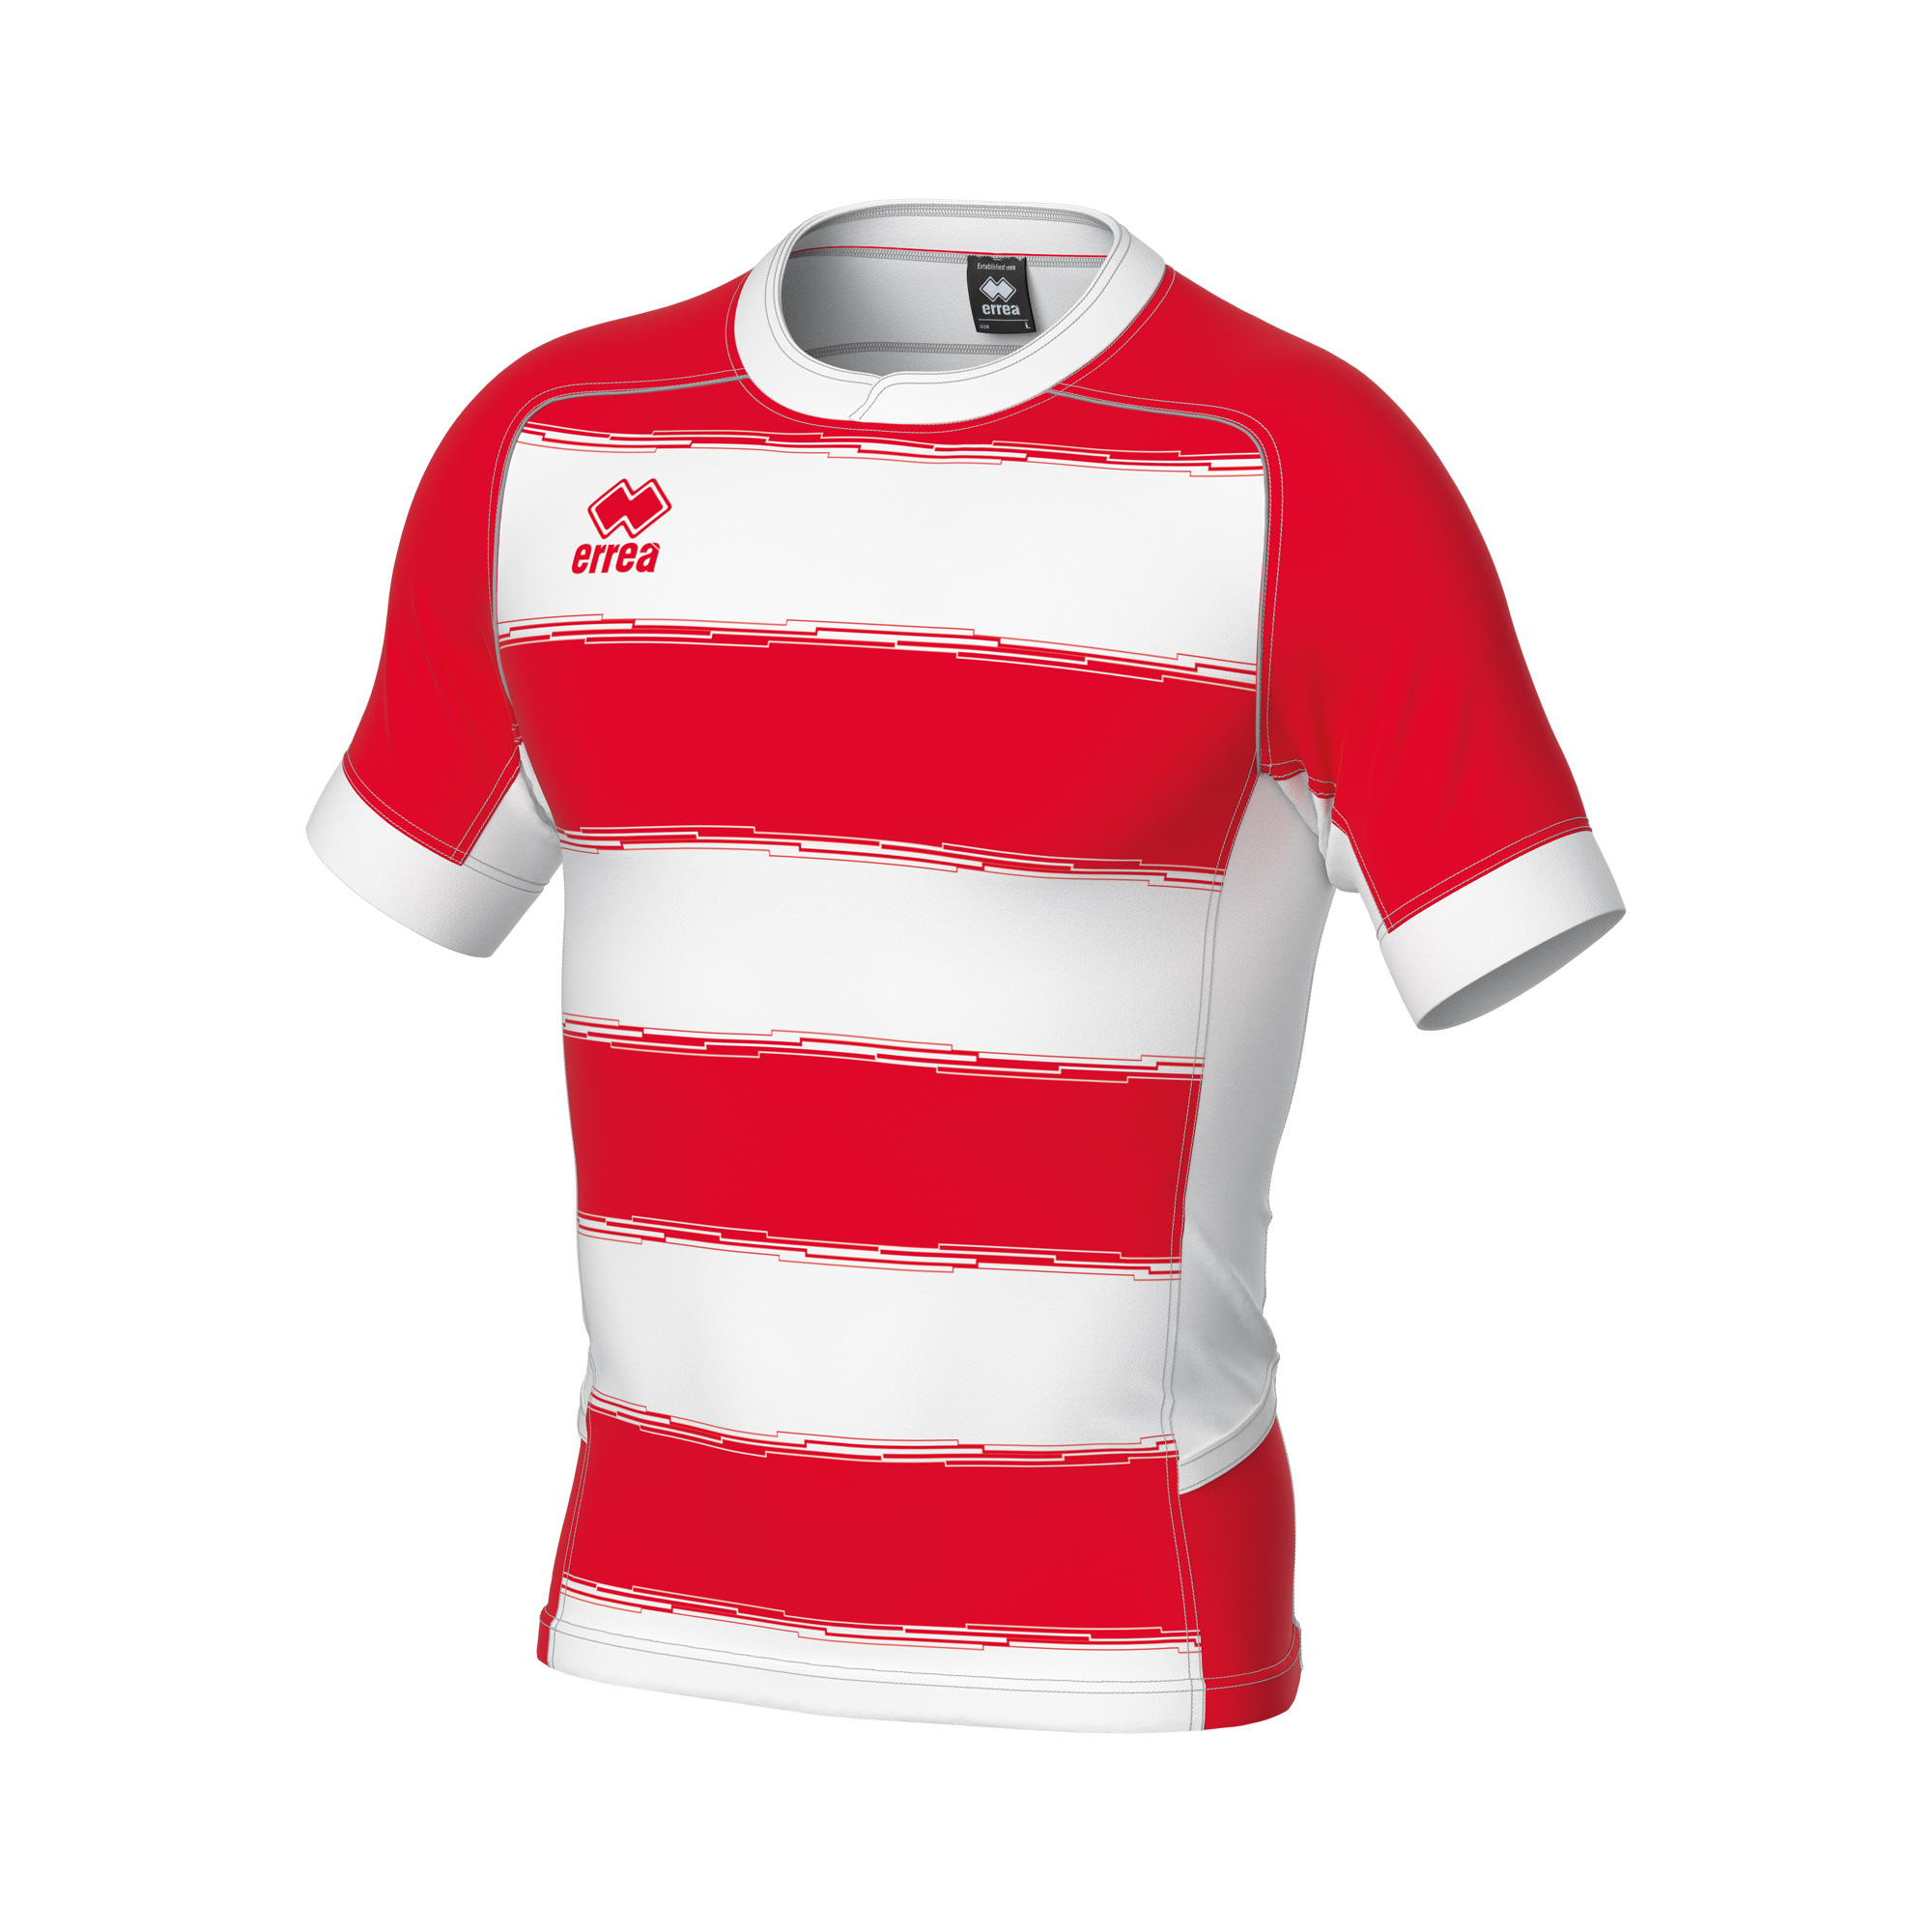 Errea Clyne Rugby Shirt White Red